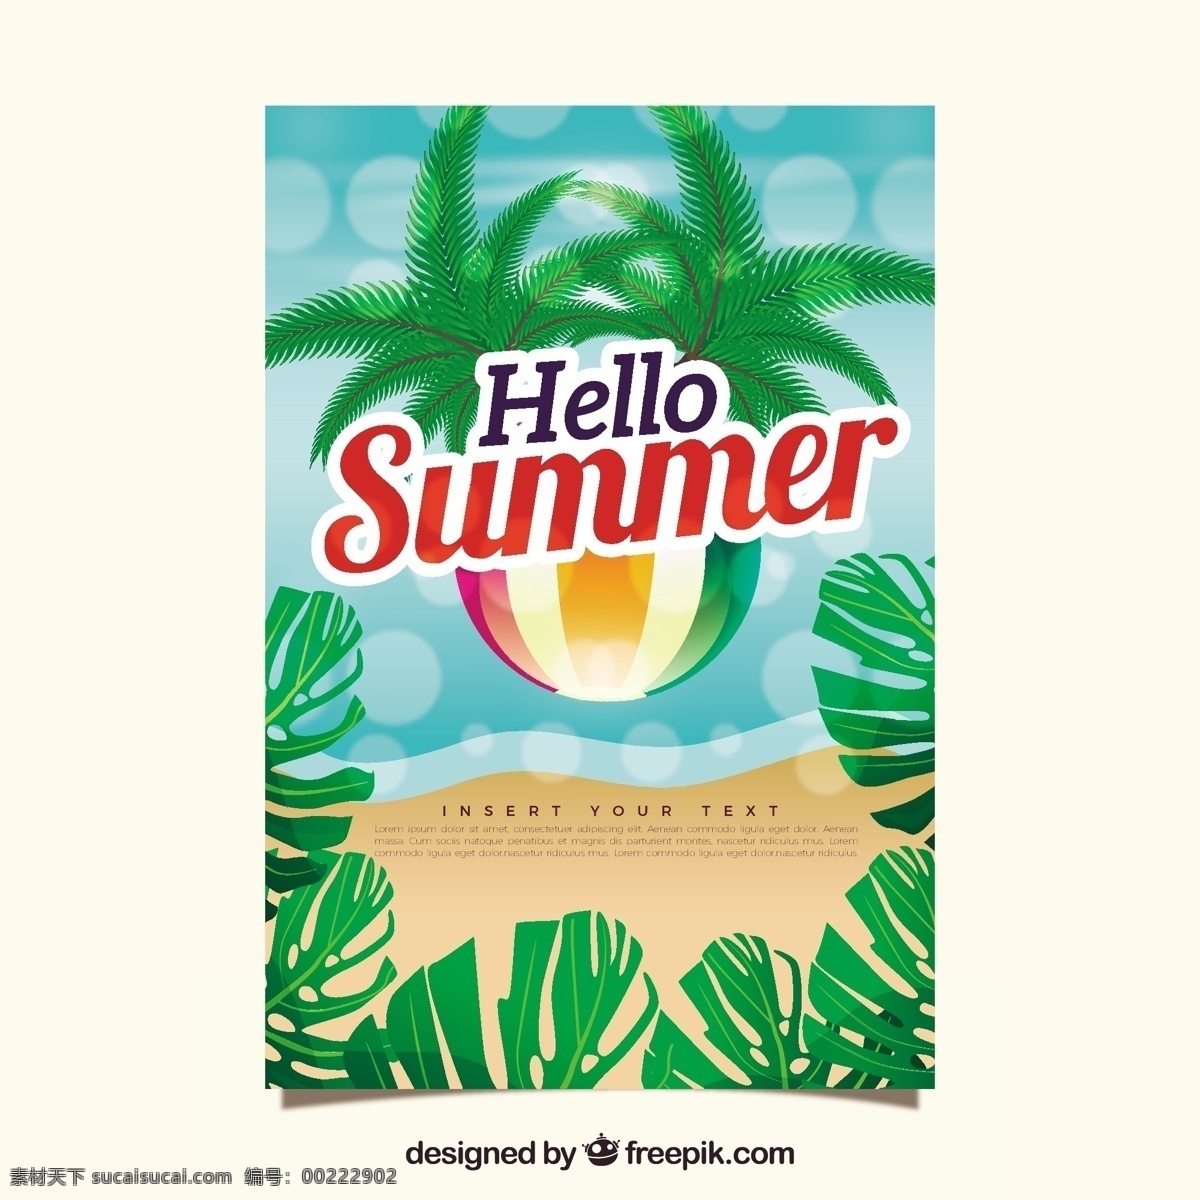 背景 虚化 效果 装饰 夏季 卡 夏天 模板 海 海滩 颜色 叶 度假 背景虚化 球 打印效果 夏日海滩 季节 节日卡片 有光泽 现实